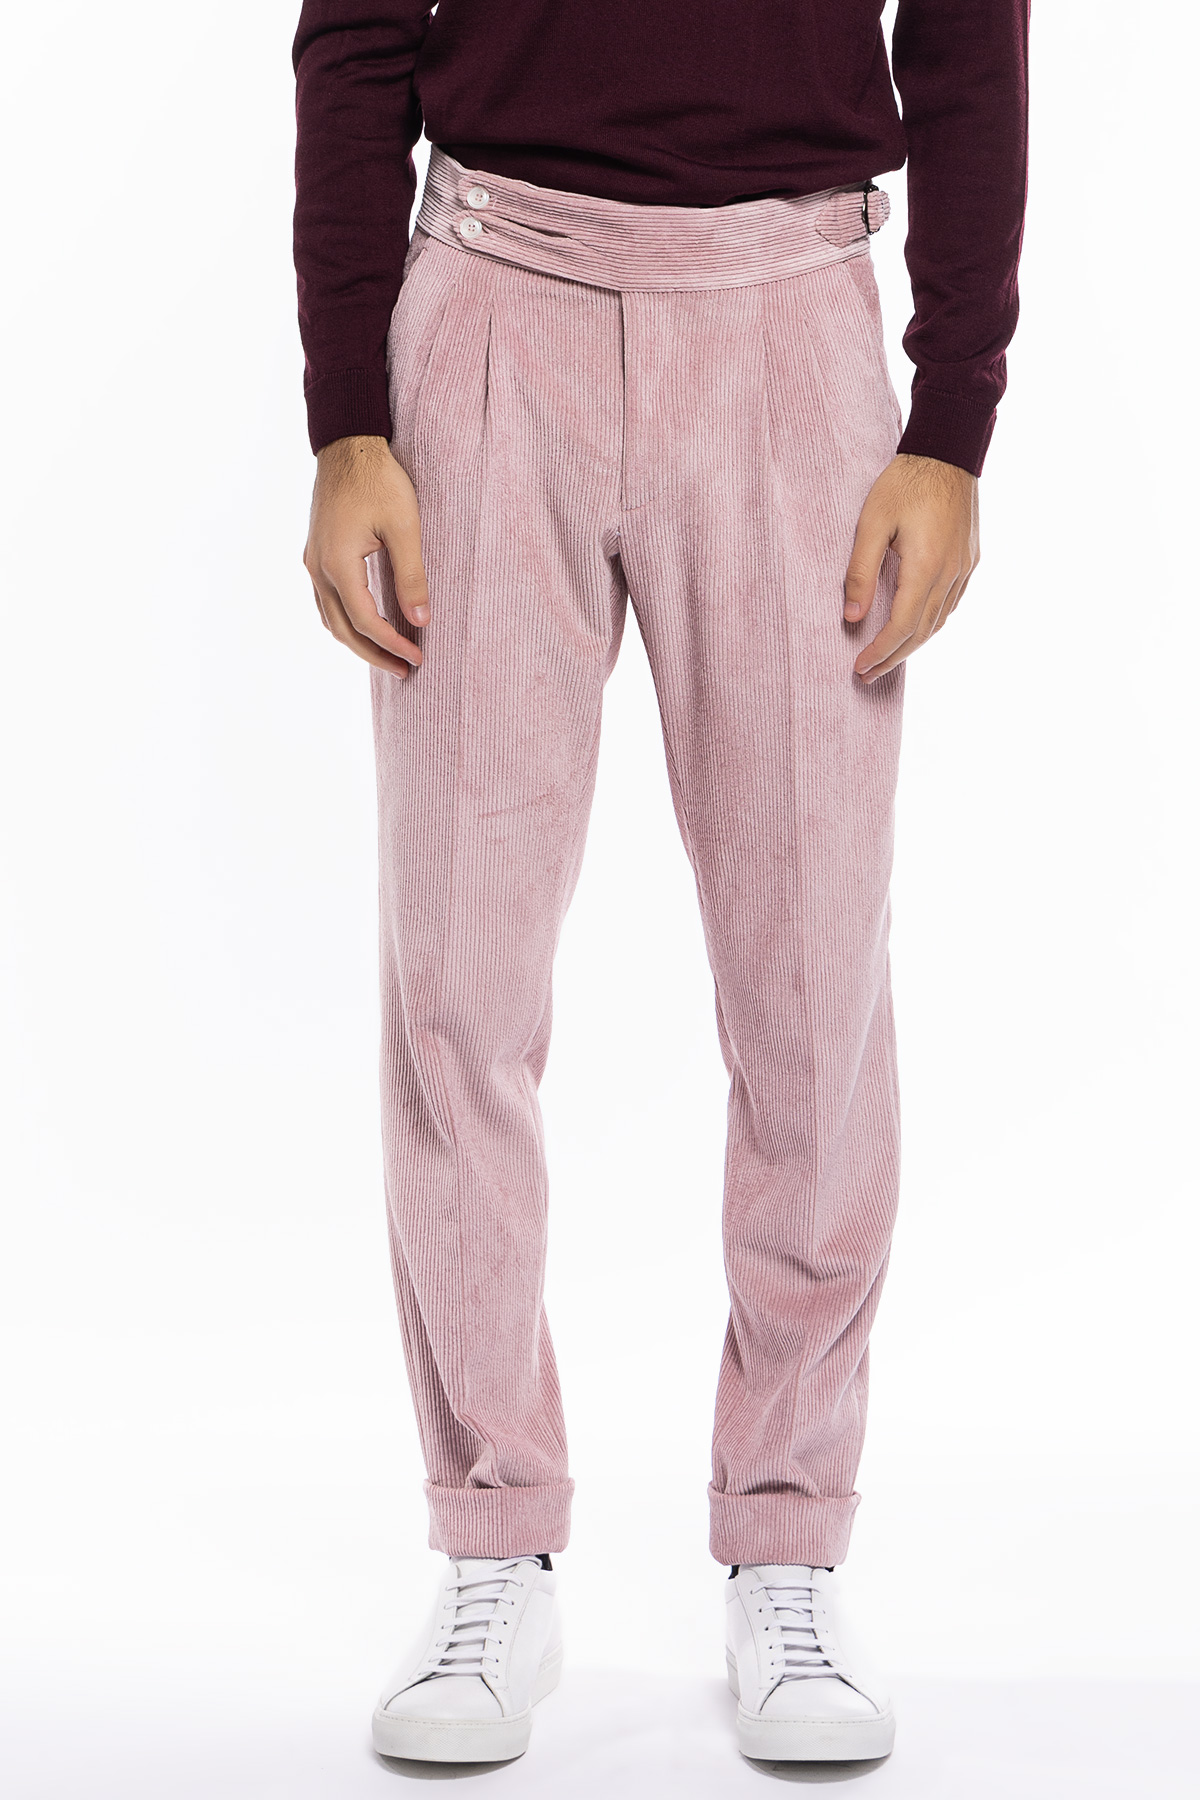 Pantalone uomo rosa vita alta biforcato doppia pinces in velluto a costine strette